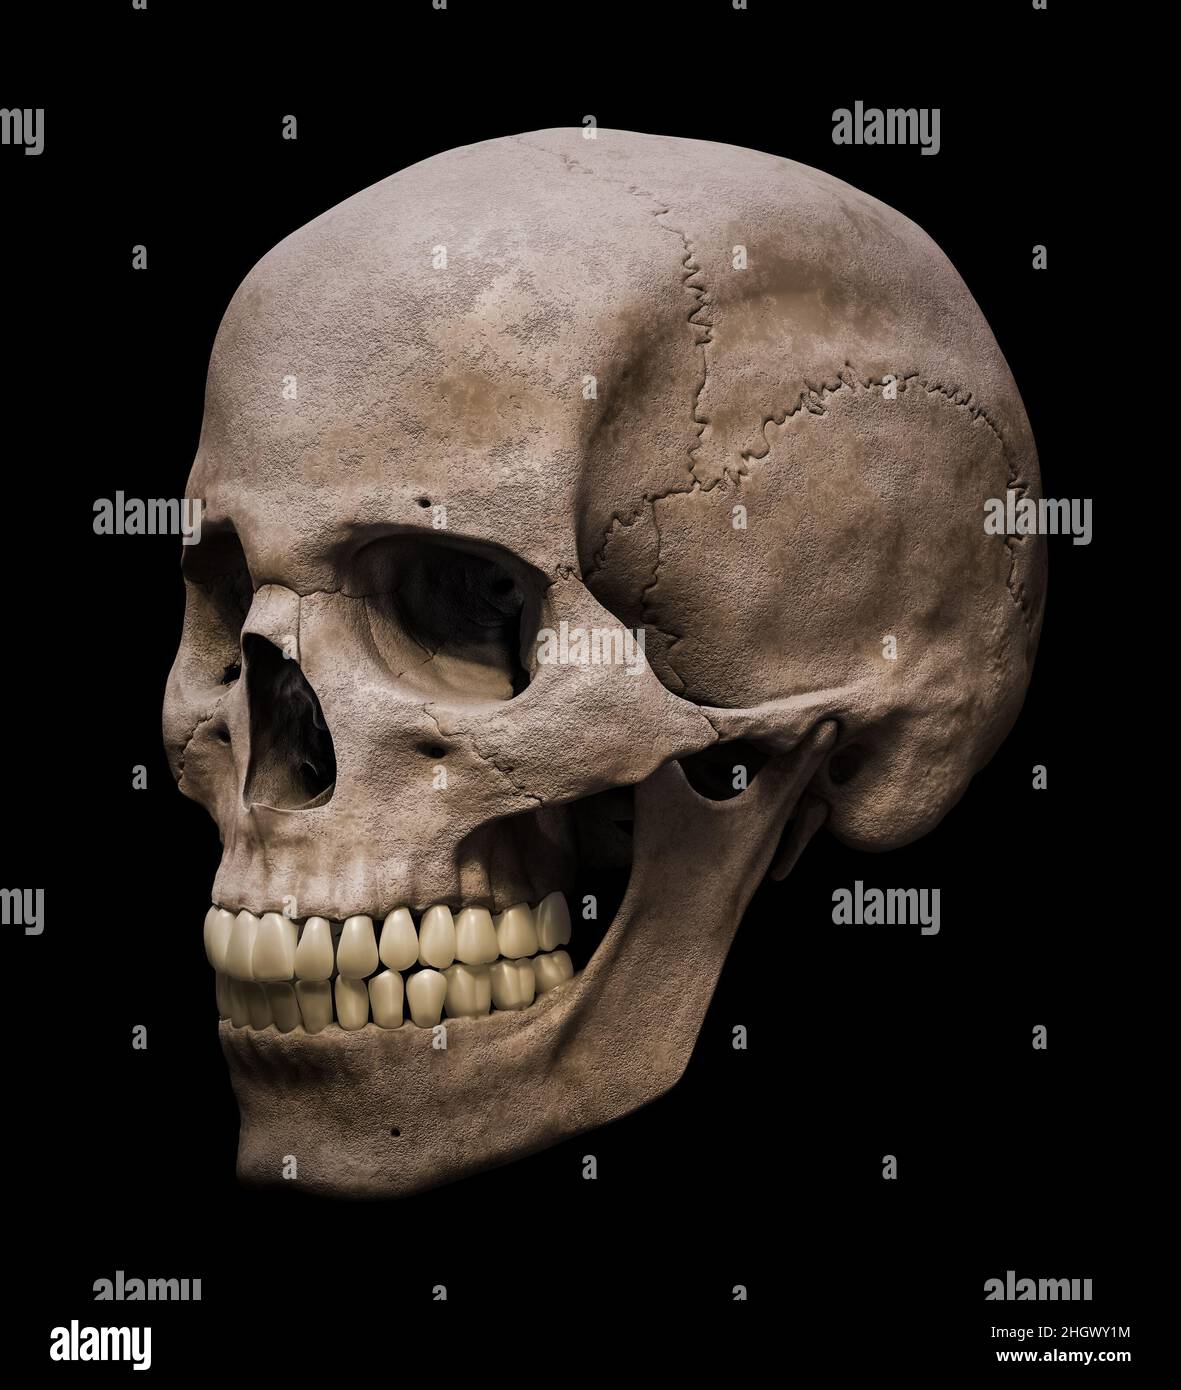 Cráneo masculino Homo sapiens anatómicamente preciso en vista de tres cuartos o vista de perfil 3D que representa una ilustración aislada sobre fondo negro. Anat humano Foto de stock